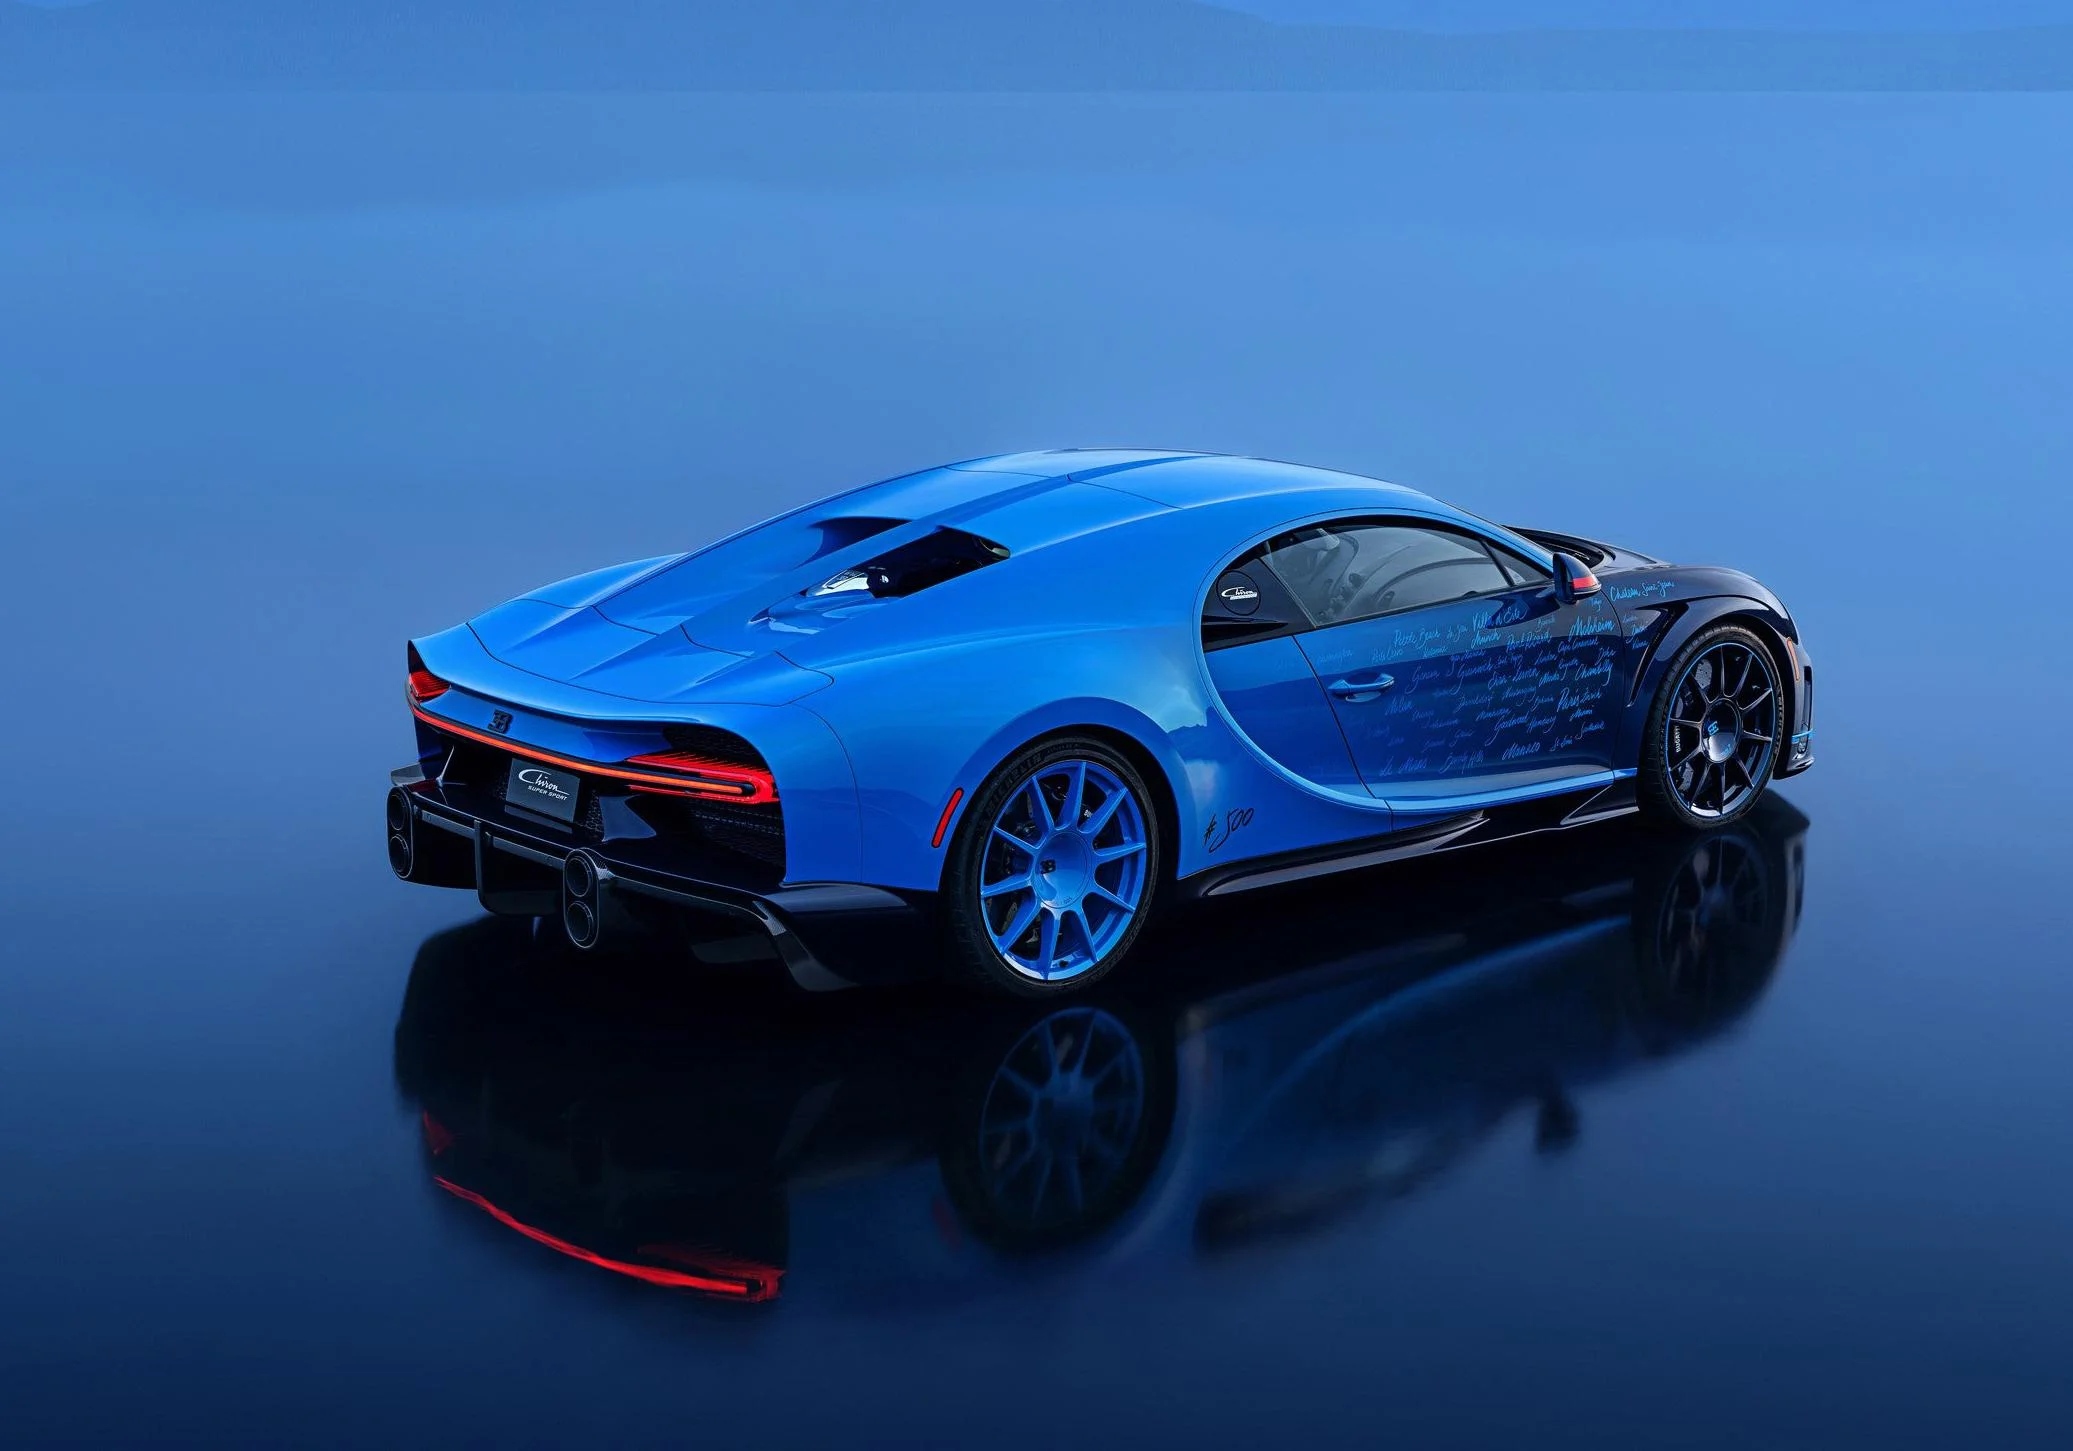 Bugatti'nin Efsanevi Modeli Chiron'un Üretimi Son Buldu: Hayranlık Uyandıran Tasarımıyla Tanıtılan Son Chiron'un Detayları!